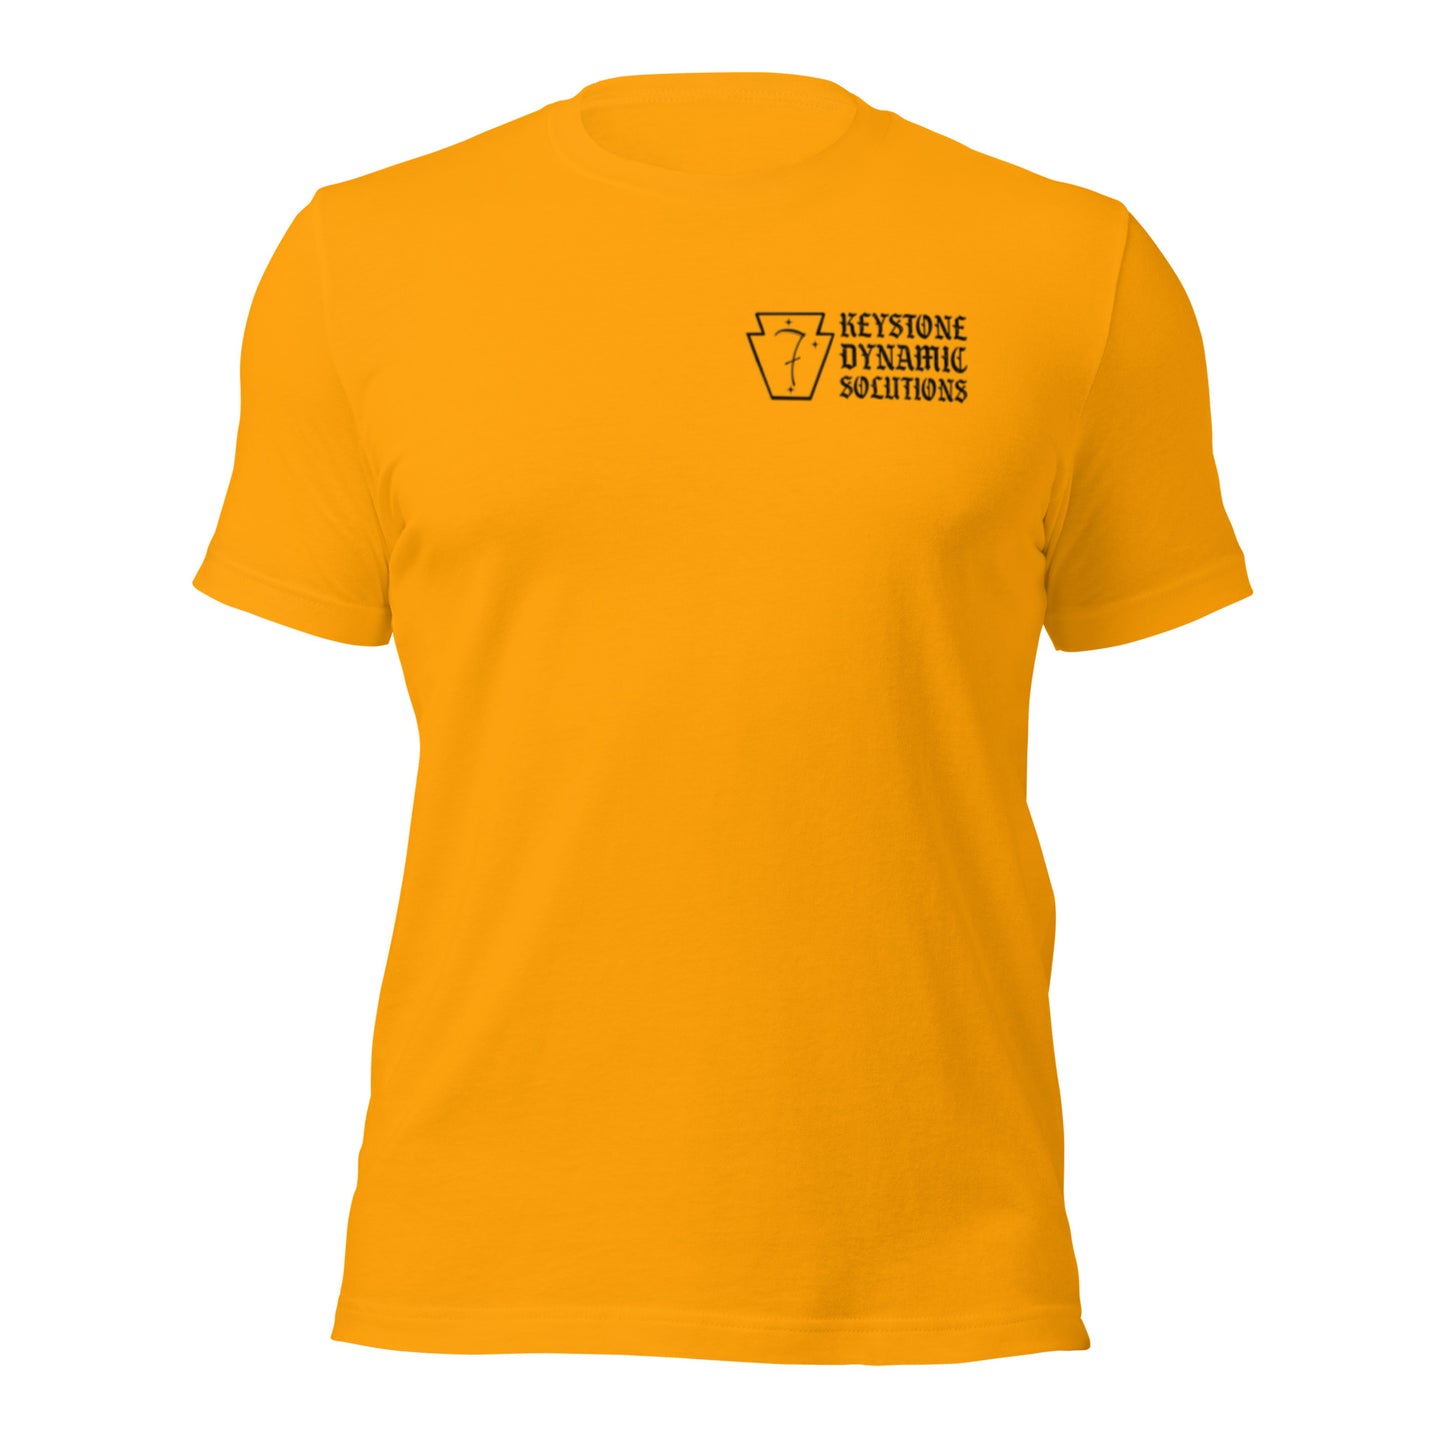 Three Rivers Minimalist shirts - Dark logo- - WP-PVS14